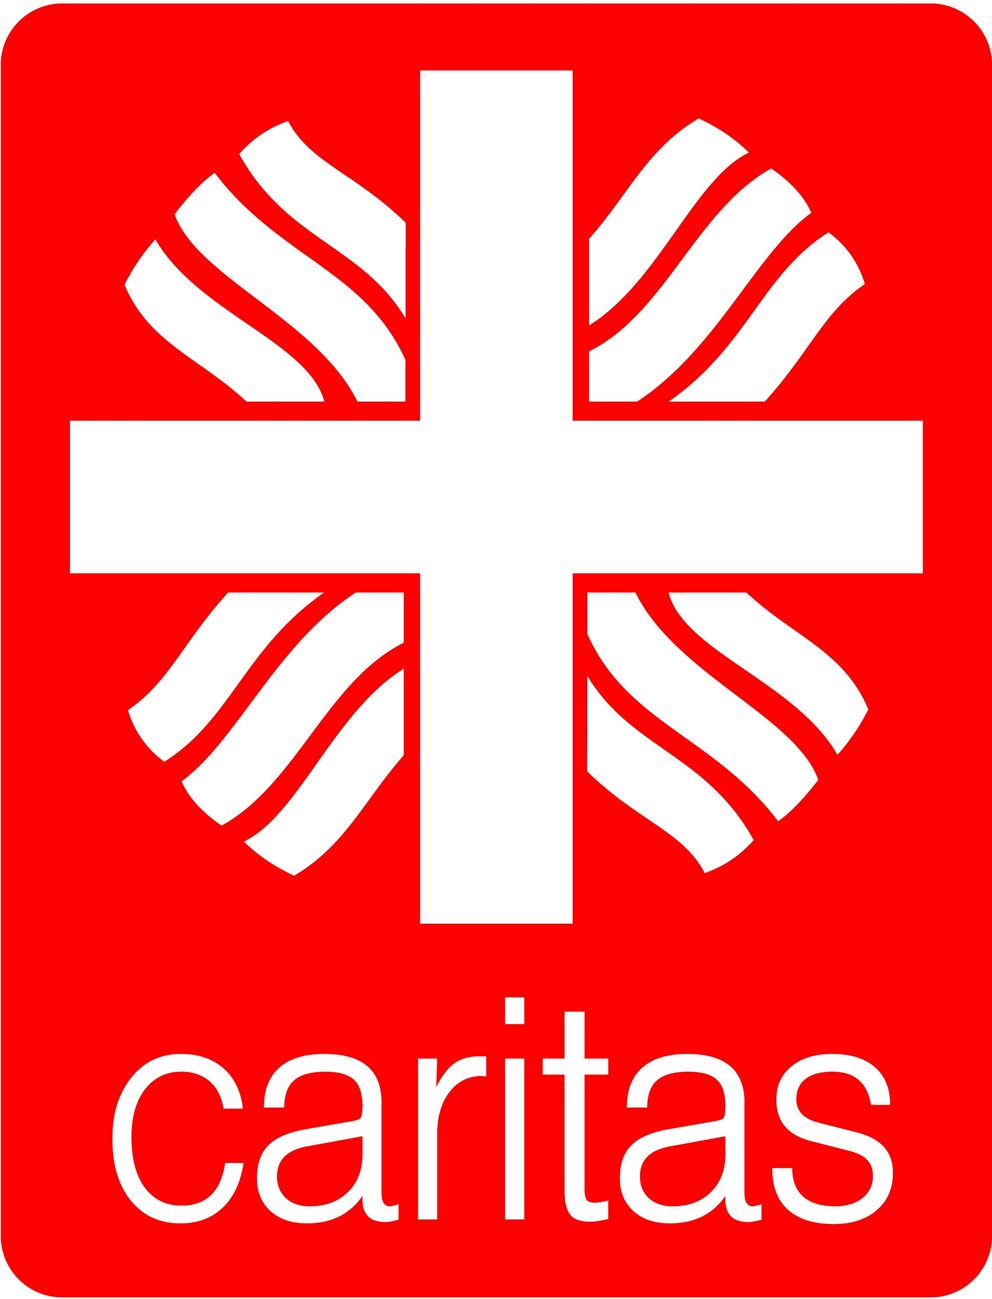 Caritasverband 